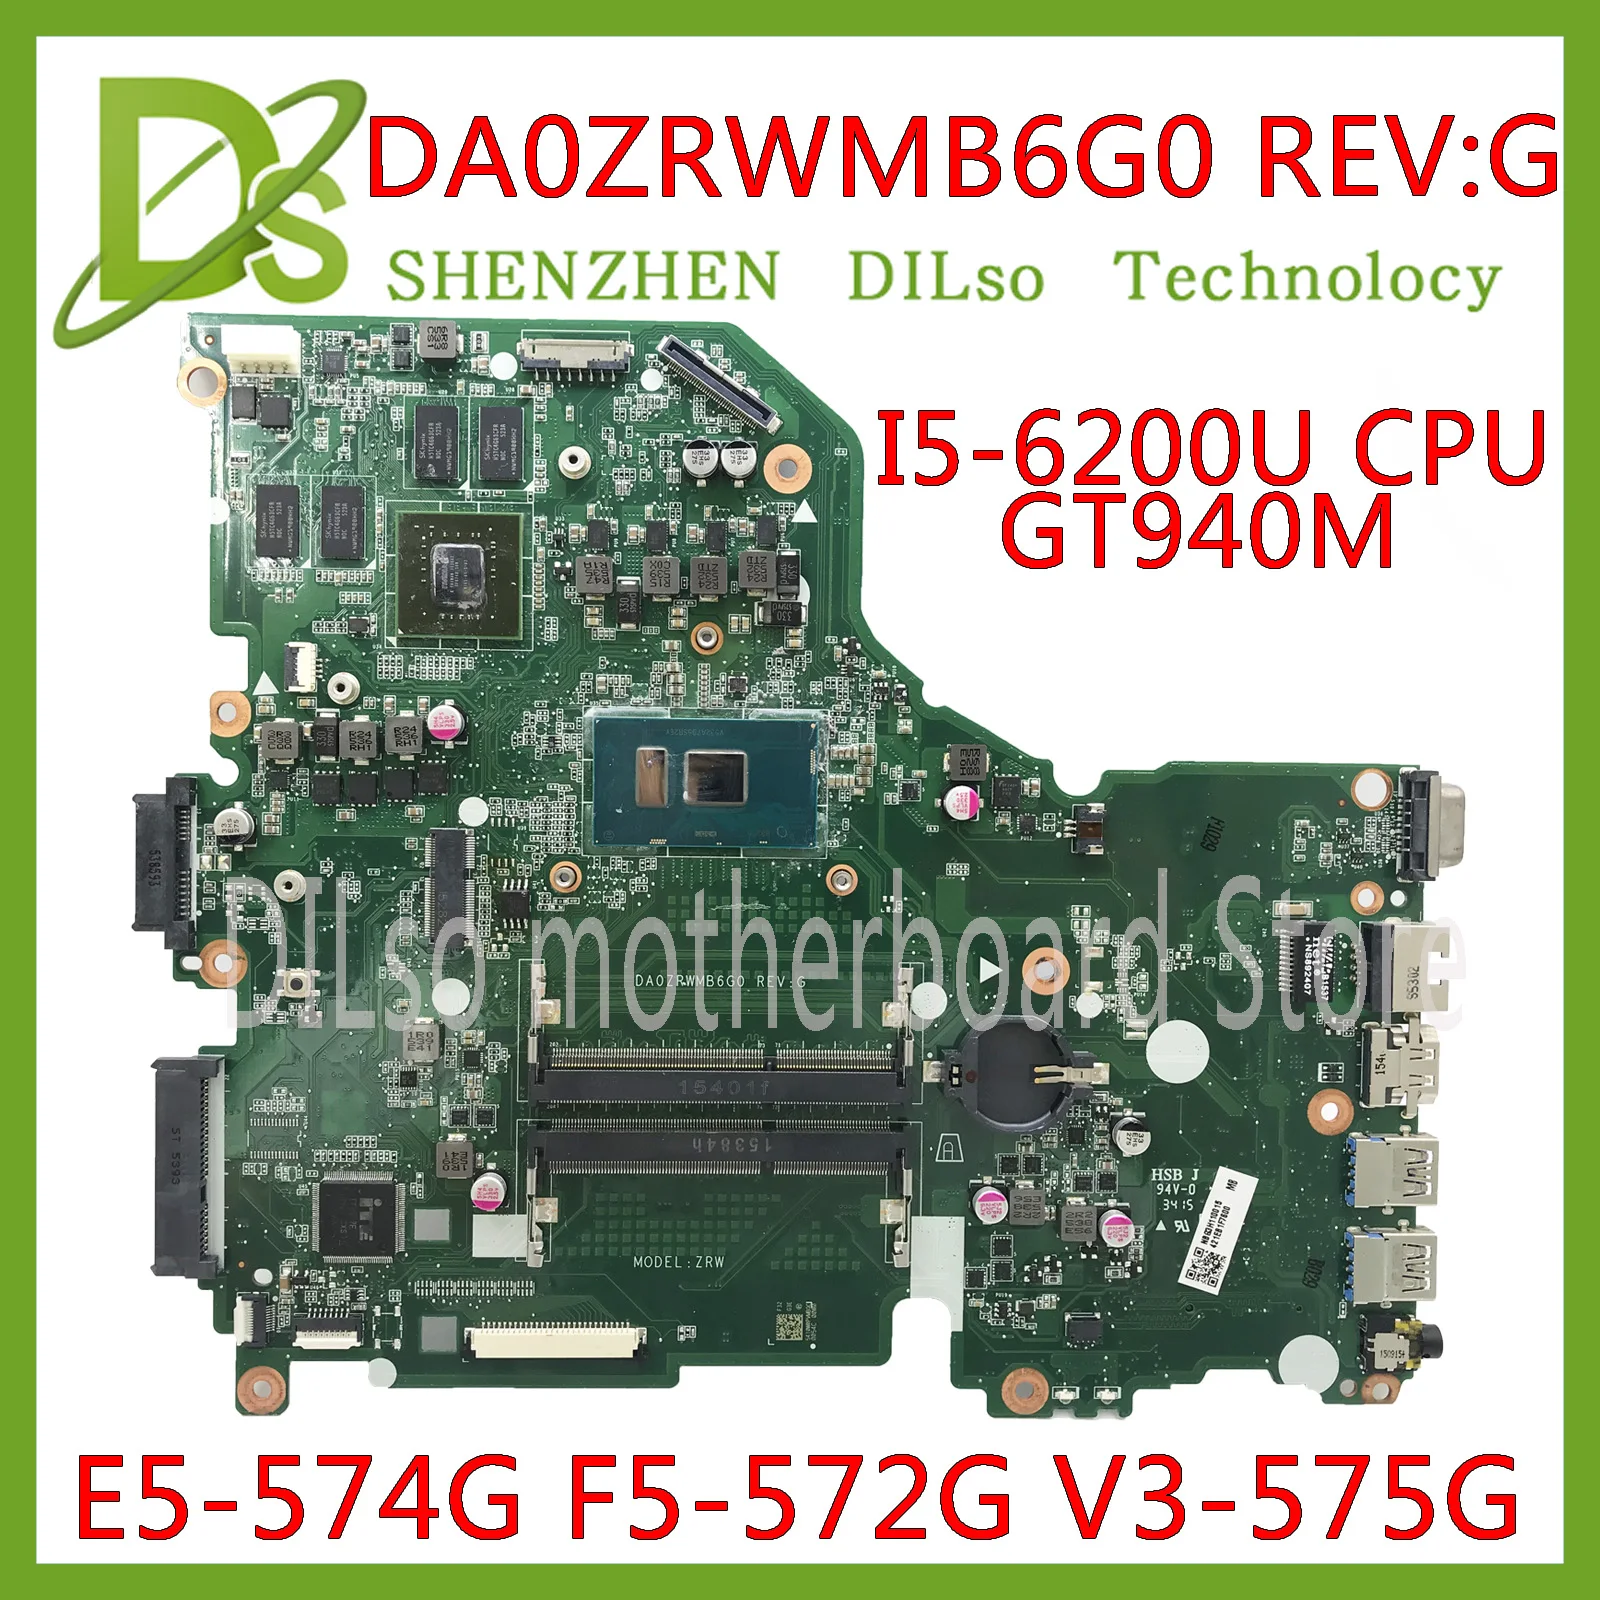 

KEFU E5-574G Mainboard For Acer Aspire E5-574 E5-574G F5-572 V3-575 V3-575G Motherboard I5-6200U CPU DA0ZRWMB6G0 Test original